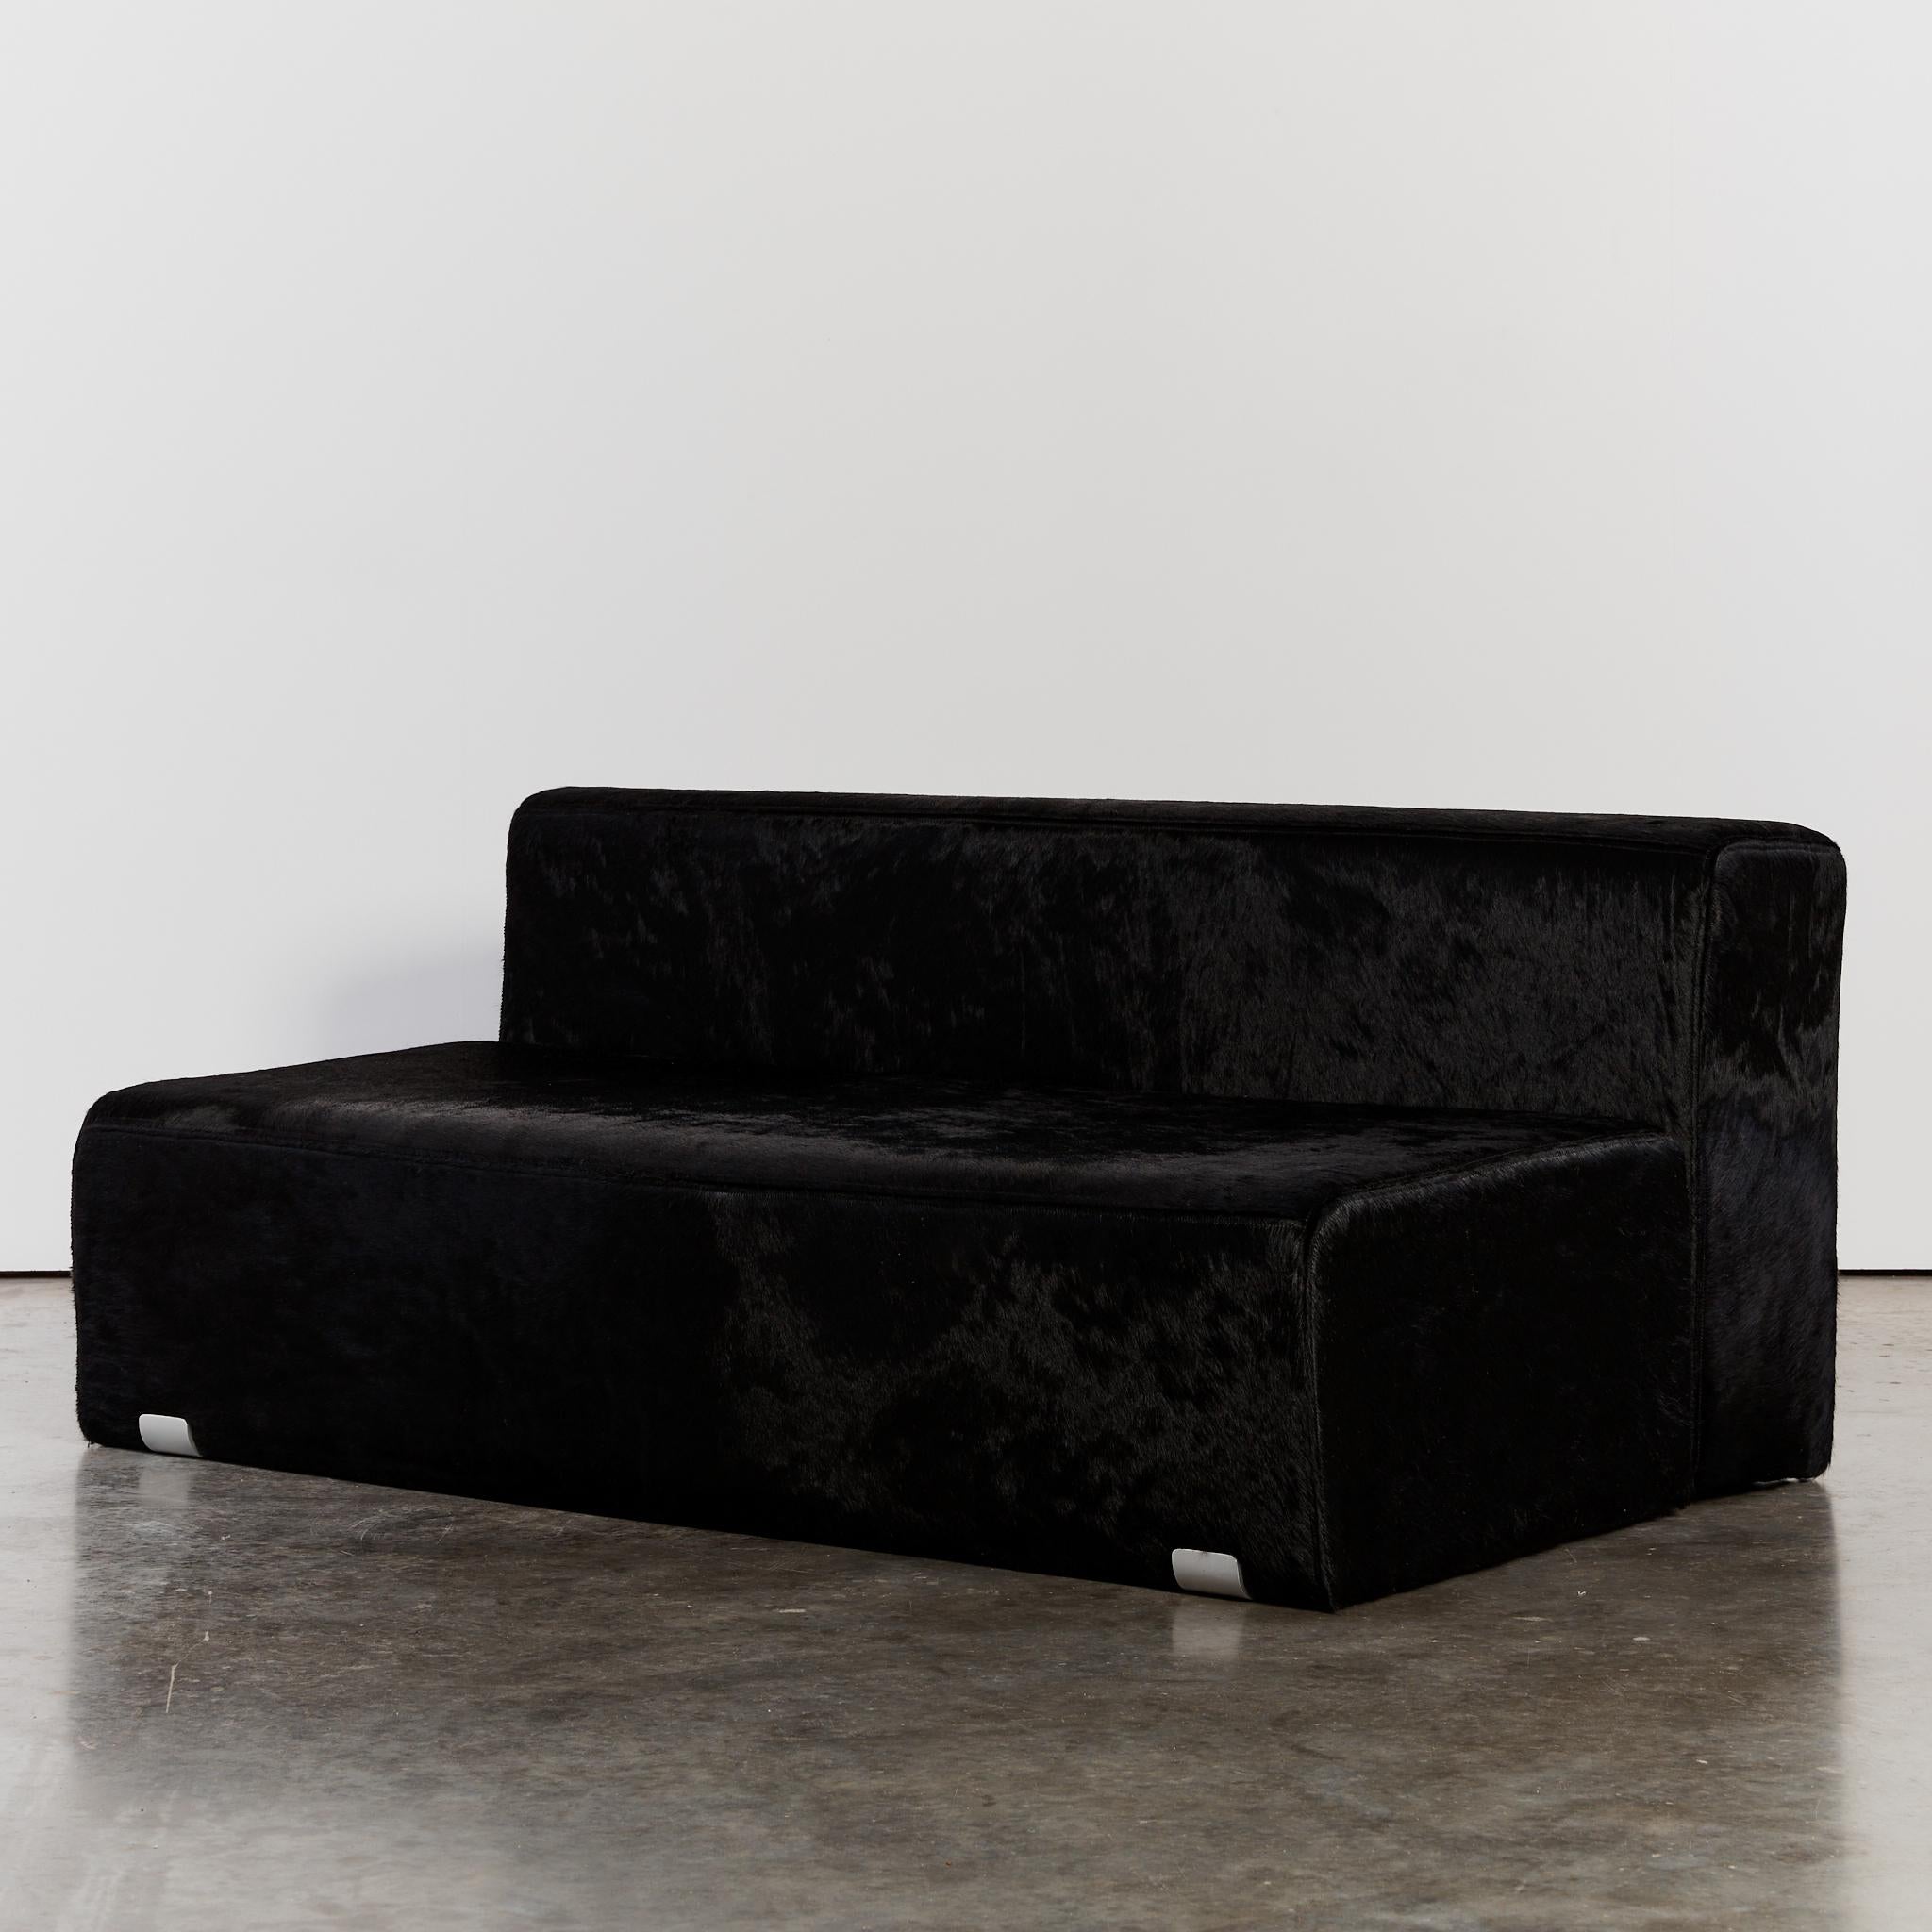 Mit seiner minimalistischen Form ist das Sofa Marcel ein Design-Klassiker. Es ist mit freiliegenden Aluminiumklammern ausgestattet und wurde mit nachhaltig gewonnenem Haar auf Leder neu gepolstert.

Das von Kazuhide Takahama im Rahmen seiner